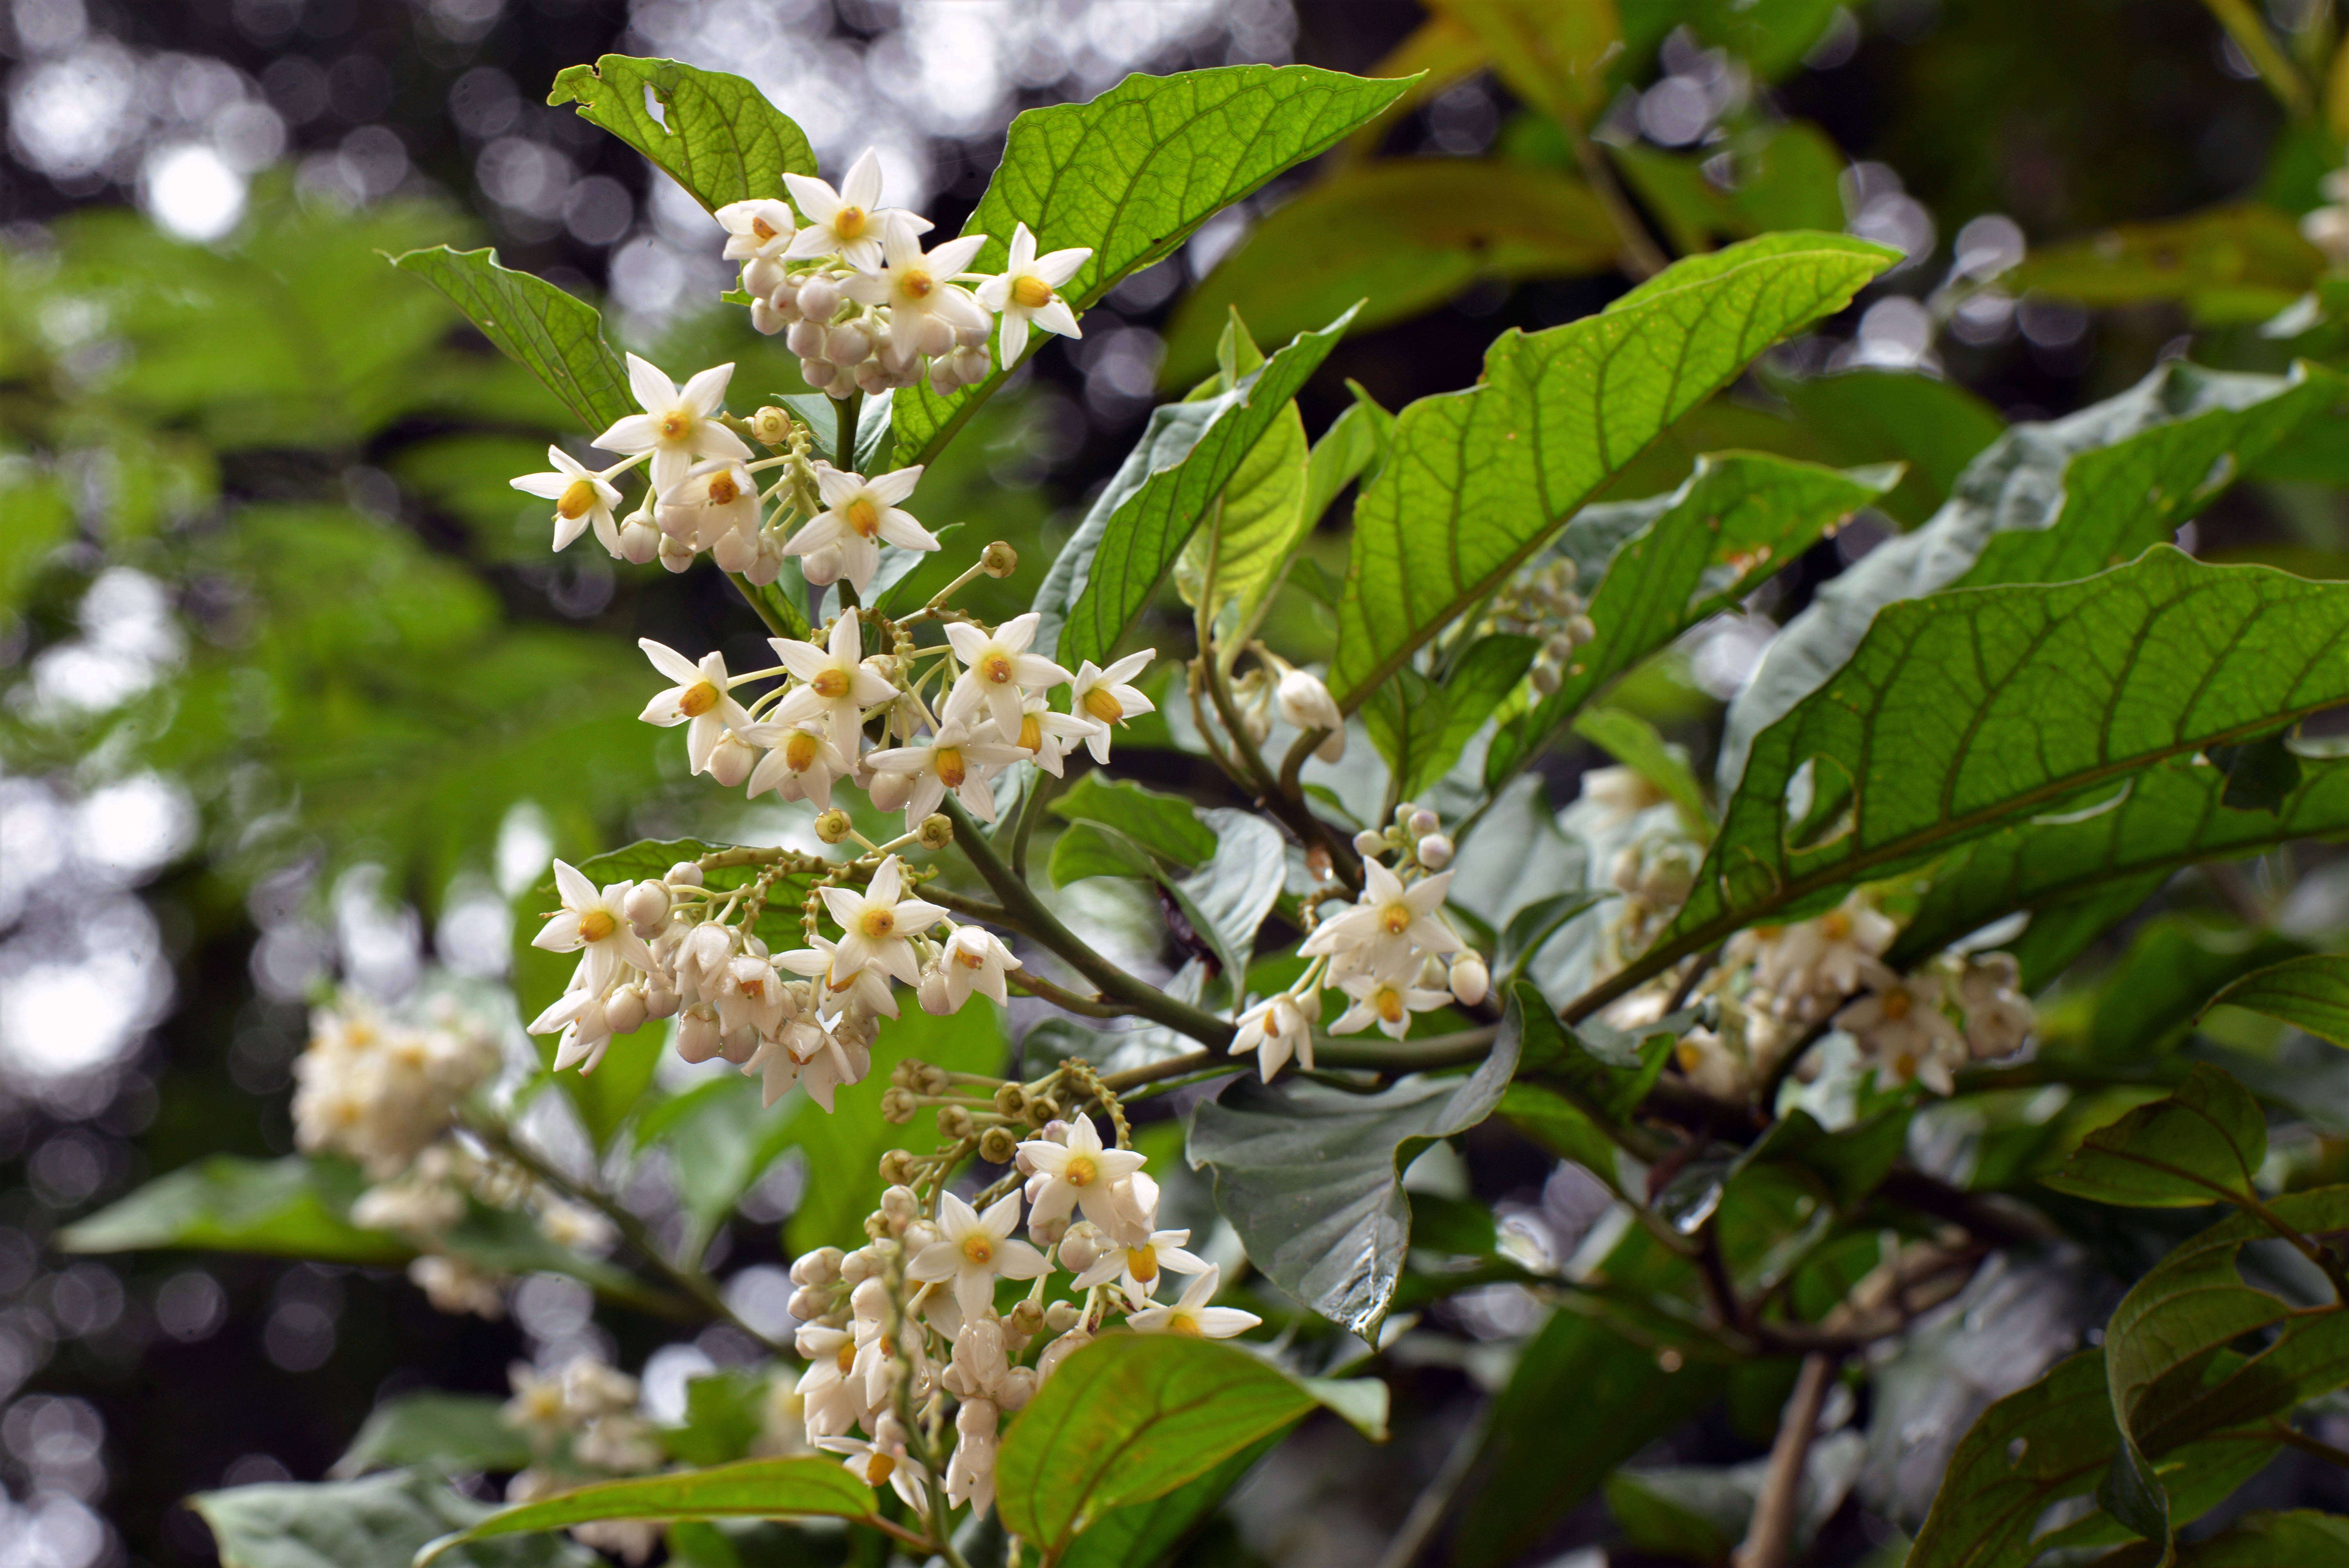 Image of Solanum L.